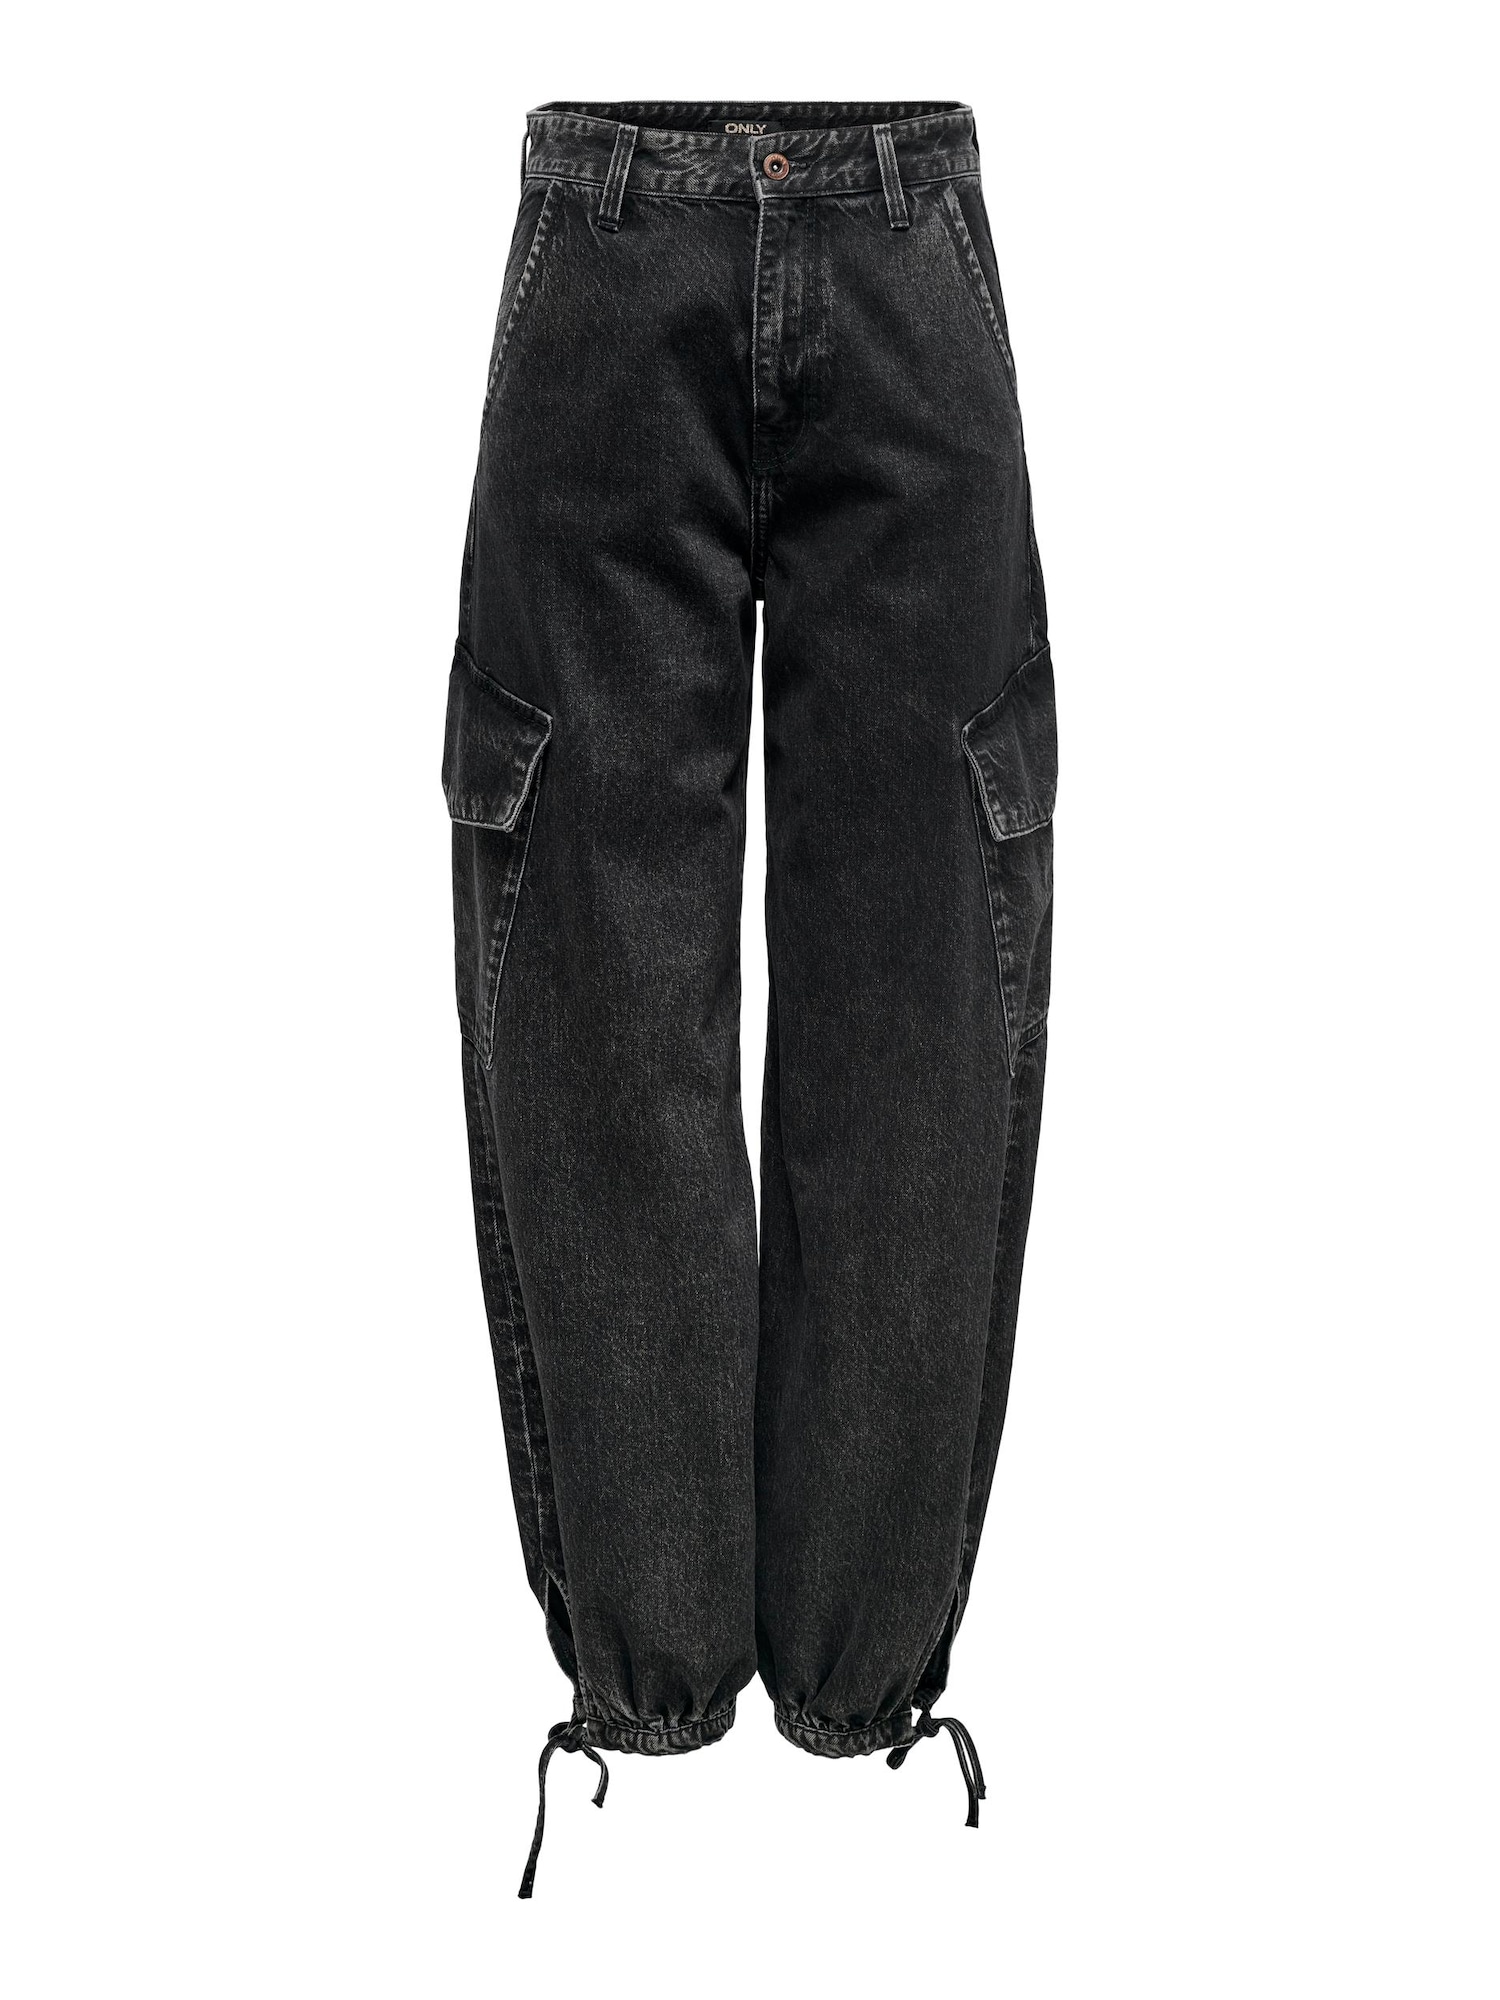 ONLY Darbinio stiliaus džinsai 'Pernille' juodo džinso spalva